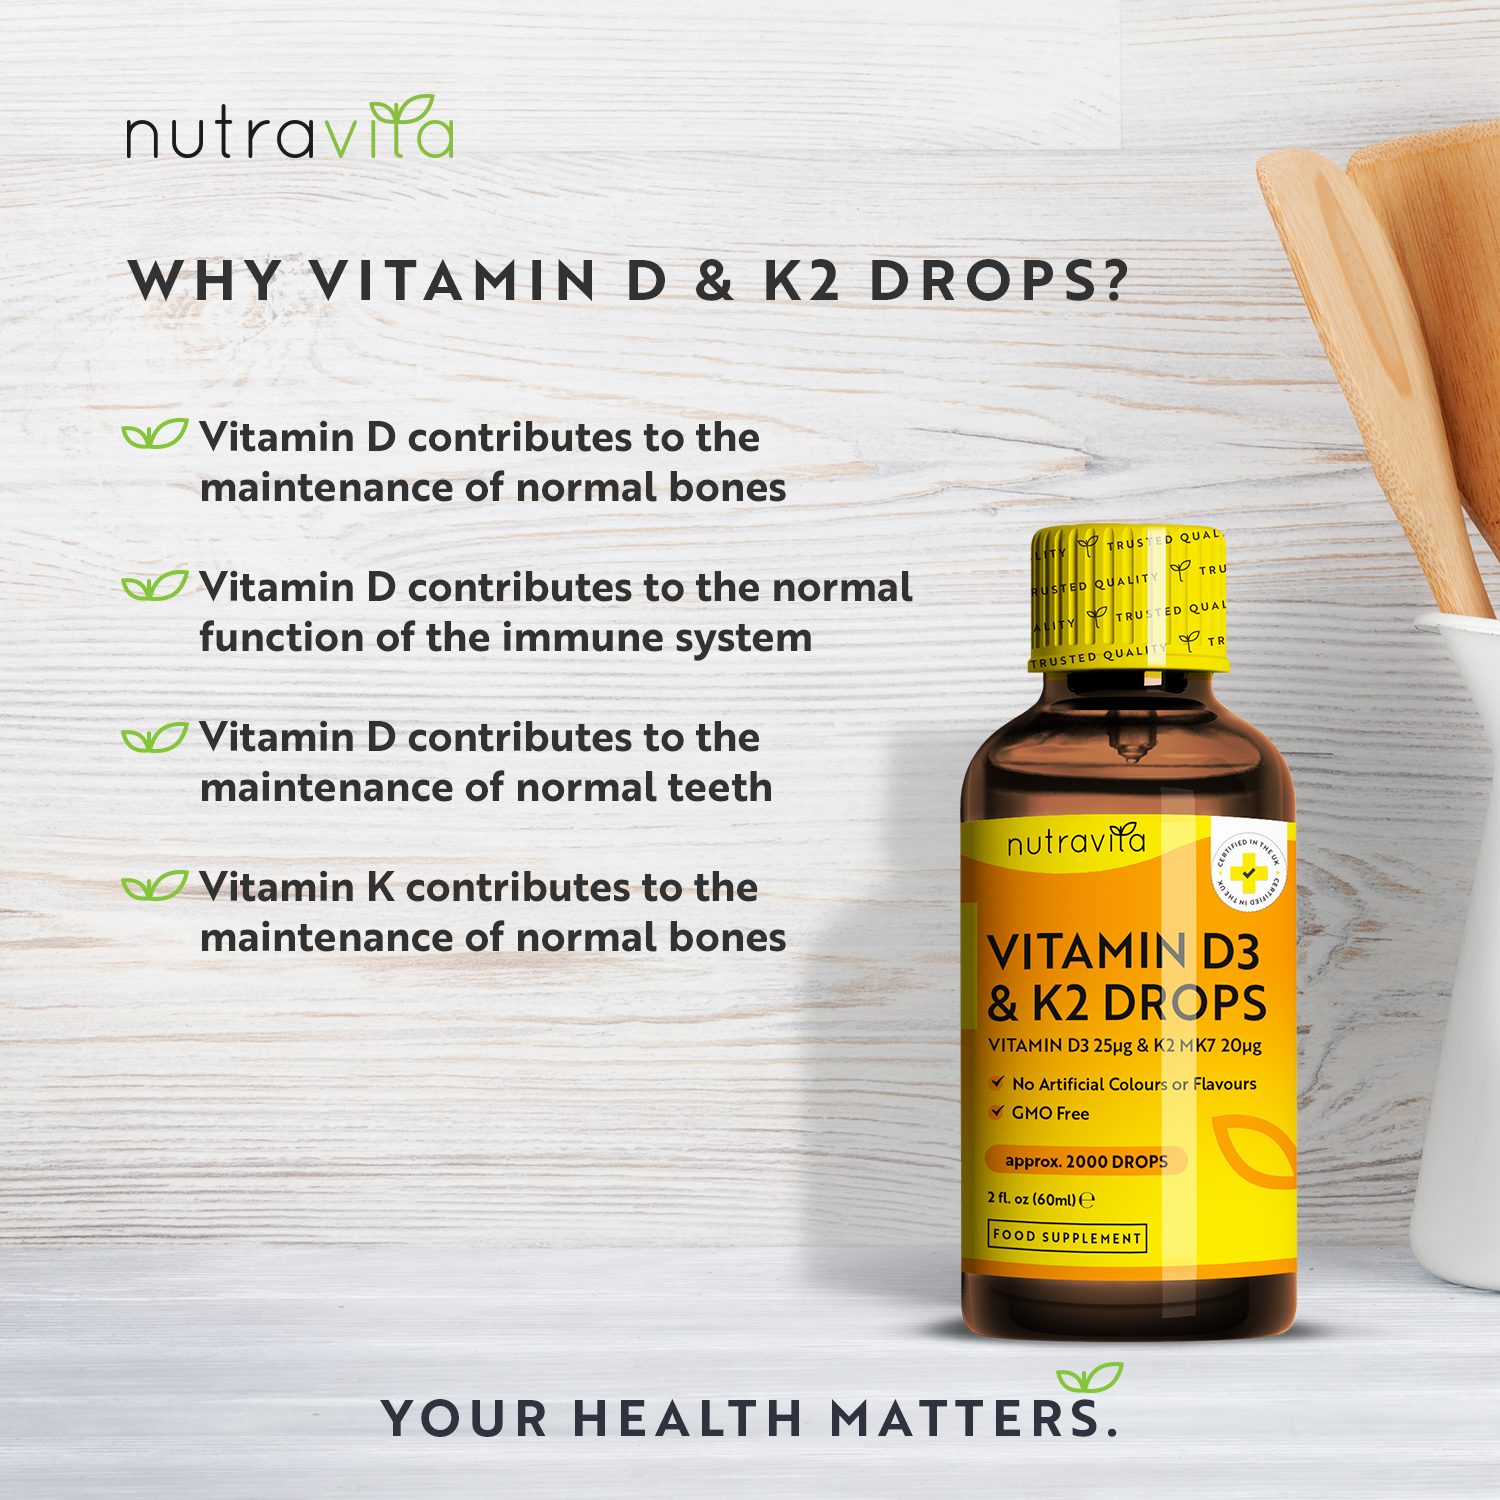 Vitamin D3 & K2 Drops 2,000 Vegetarian Drops per Bottle